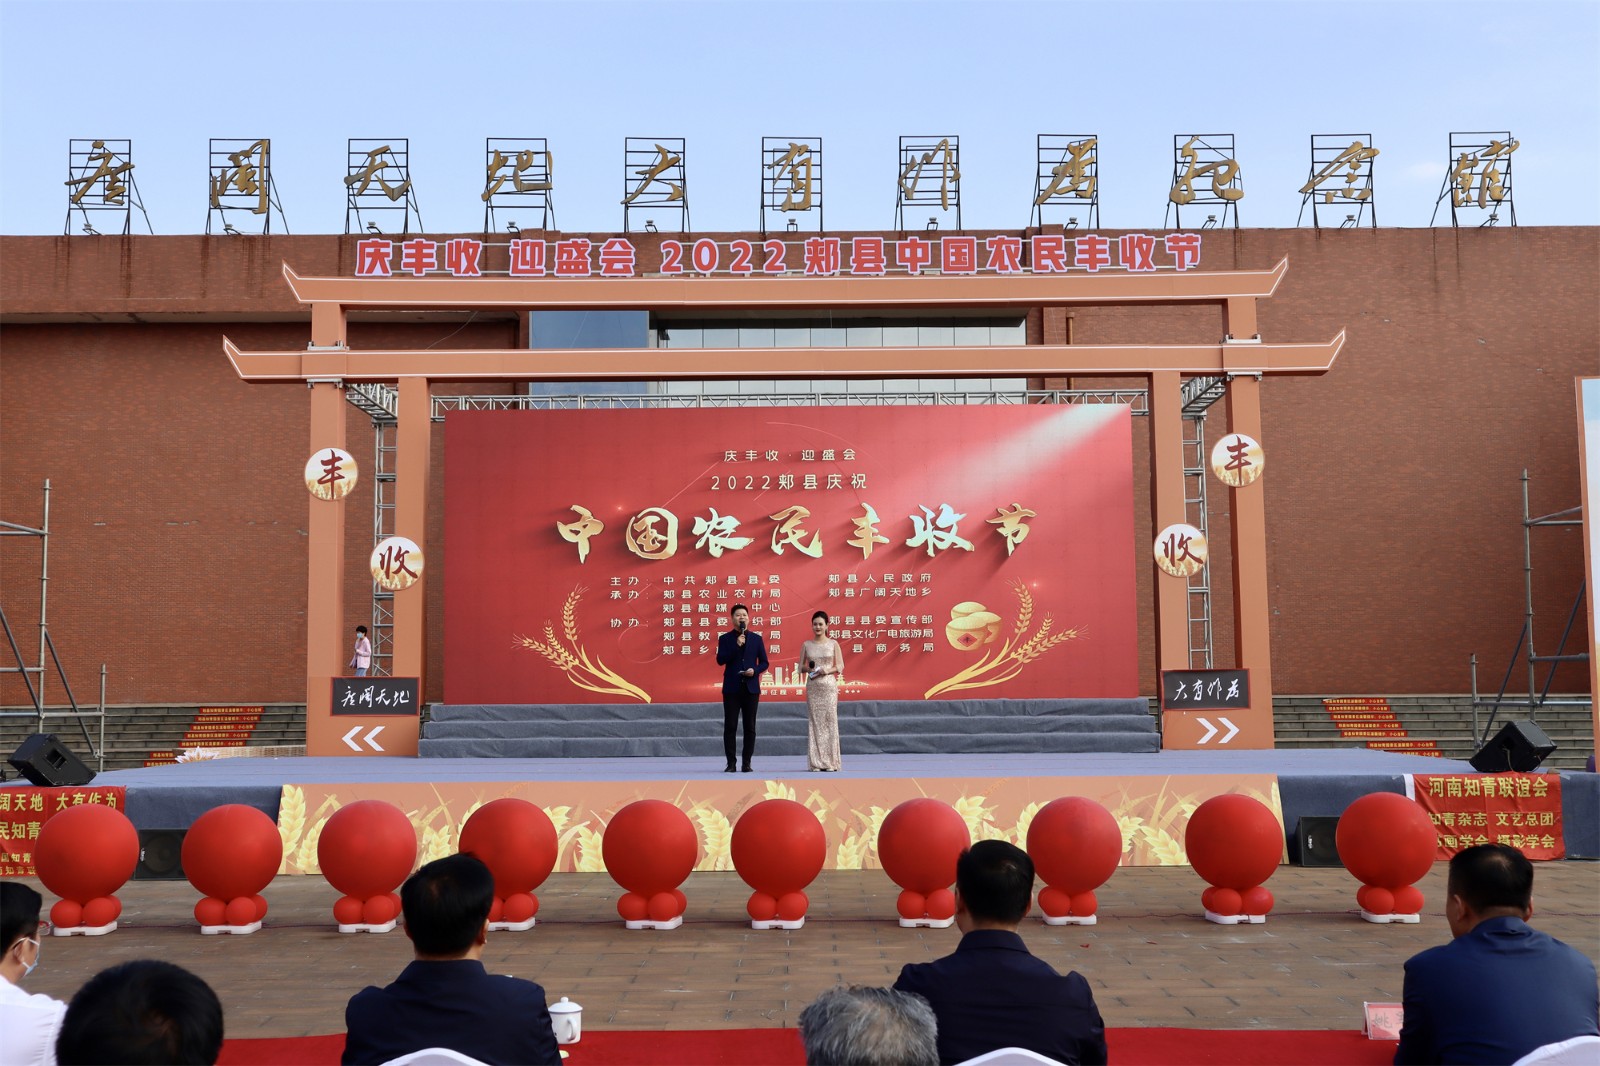 9月23日“庆丰收·迎盛会”2022郏县庆祝中国农民丰收节活动举行.1.jpg